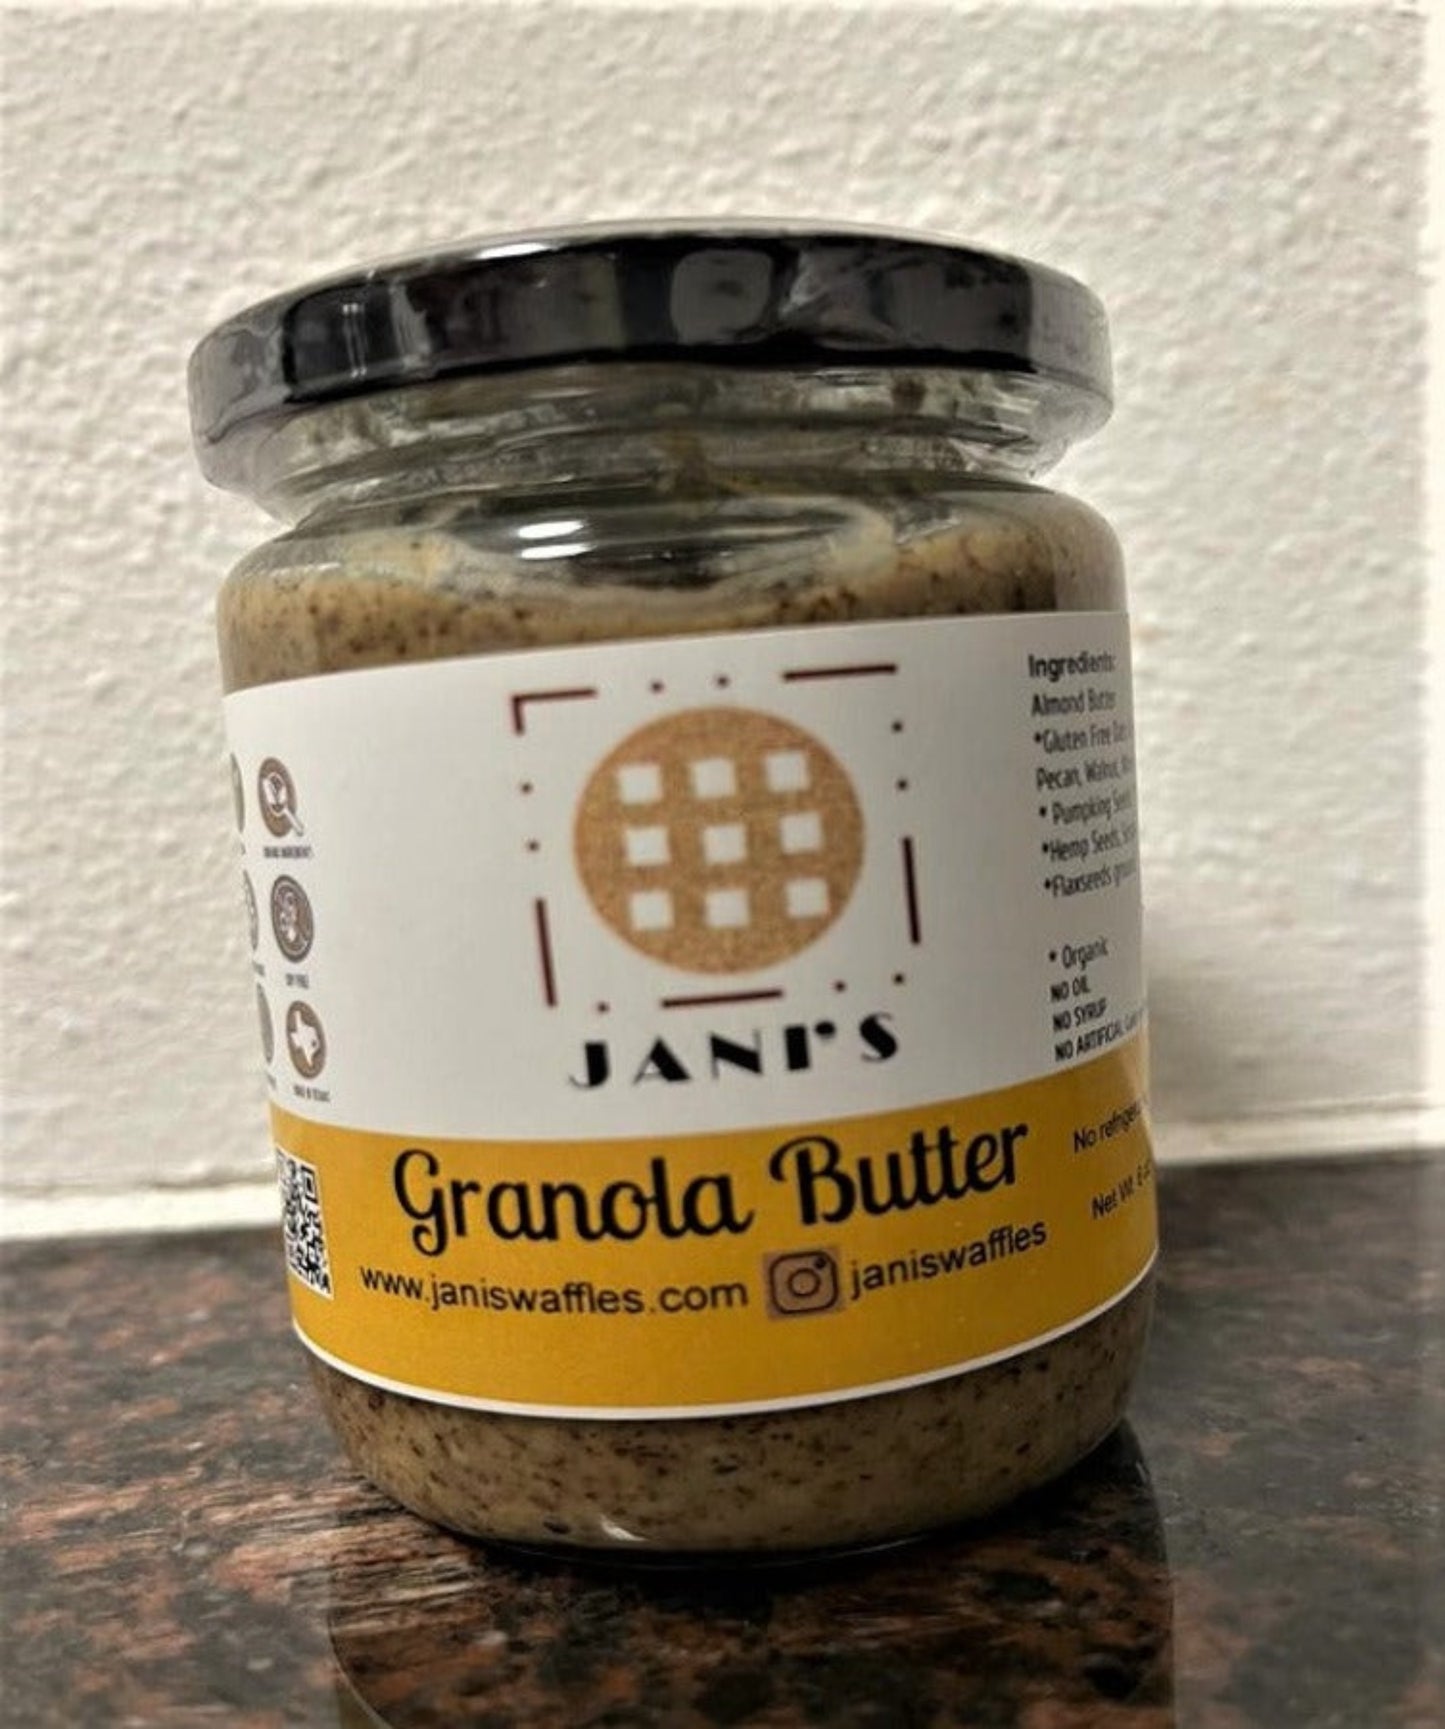 Granola Butter